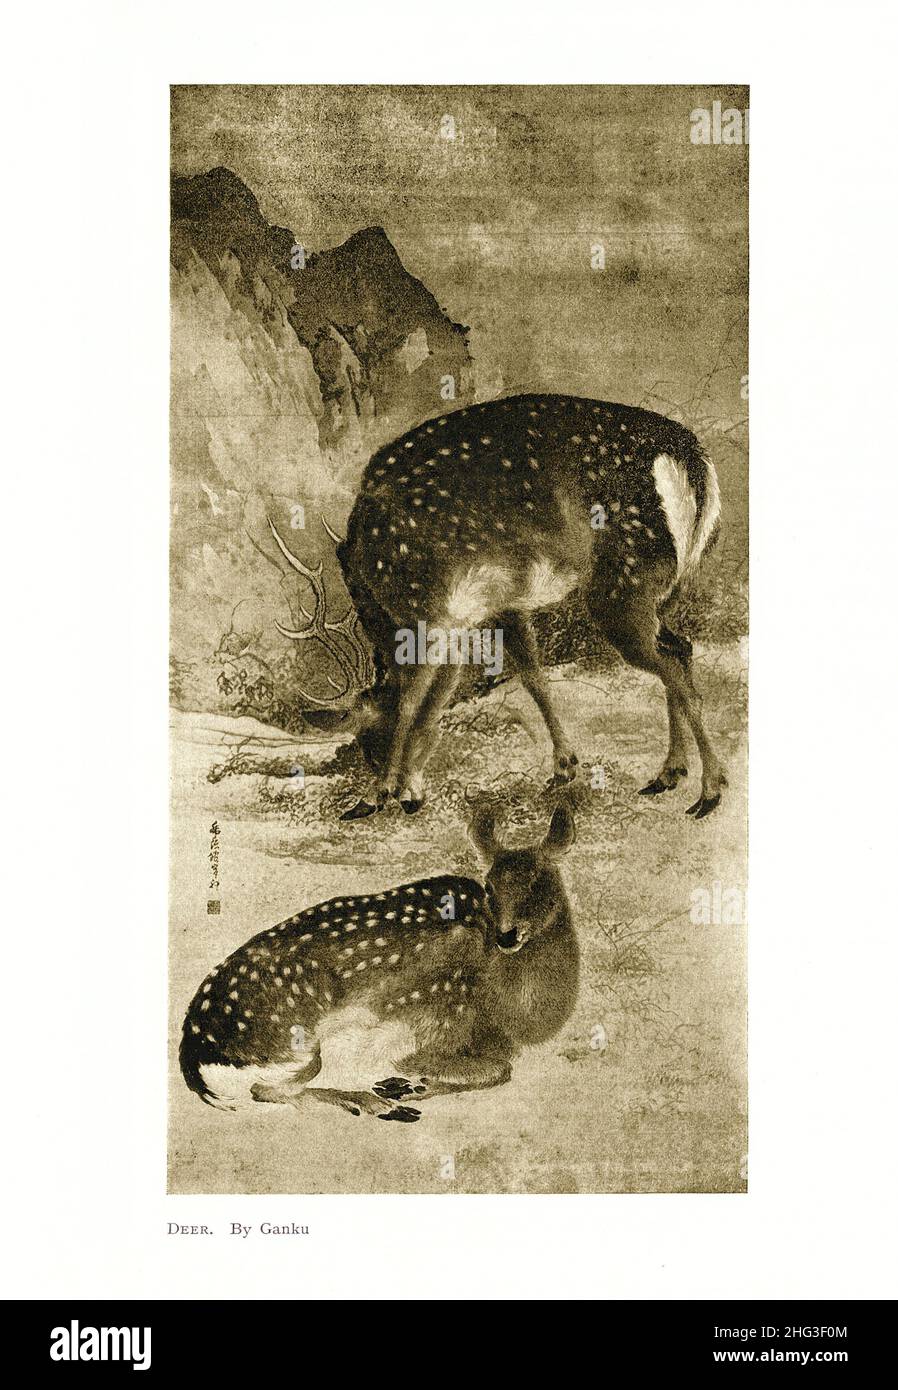 Pittura giapponese del 19th secolo: Cervo. Di Kishi Ganku. Riproduzione di un'illustrazione del libro di 1912 Kishi Ganku (1749 – 1839), o più formalmente Kishi Ku, Foto Stock